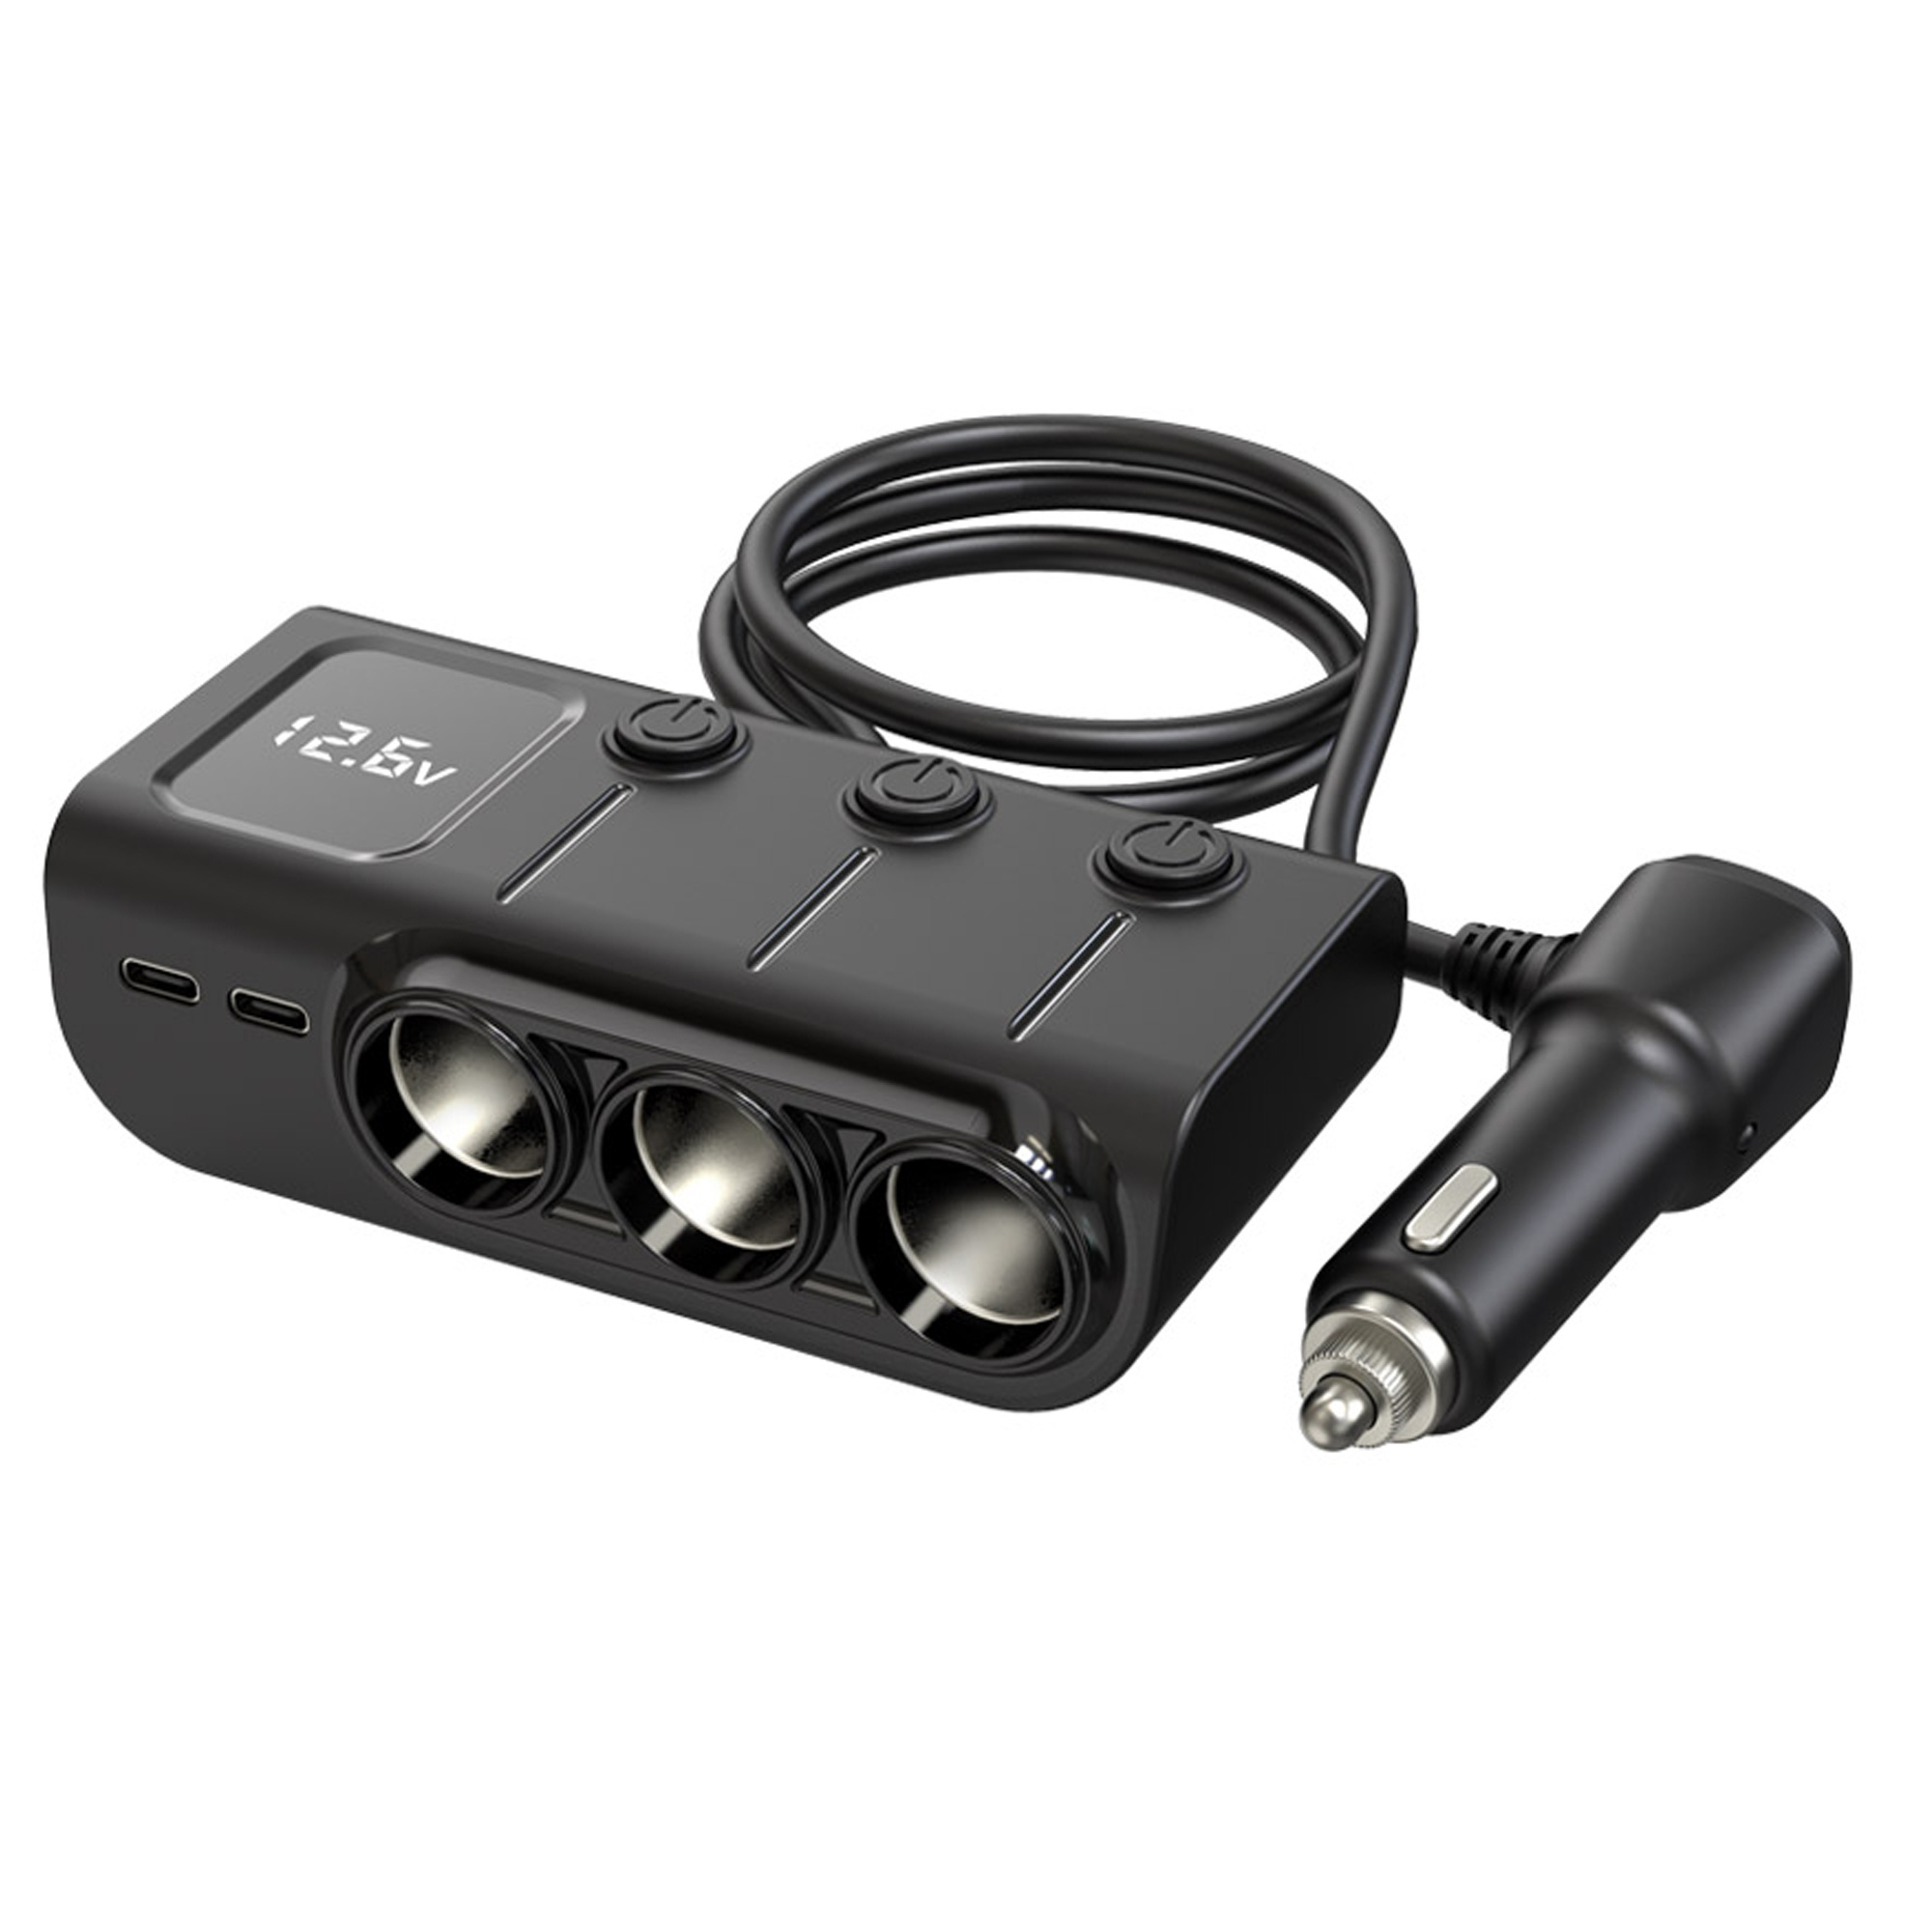 Cargador para auto USB C Otium, divide encendedor en 2 enchufes 12/24 V y  80 W, USB doble, puerto tipo C, interruptor separado, lectura LED voltaje